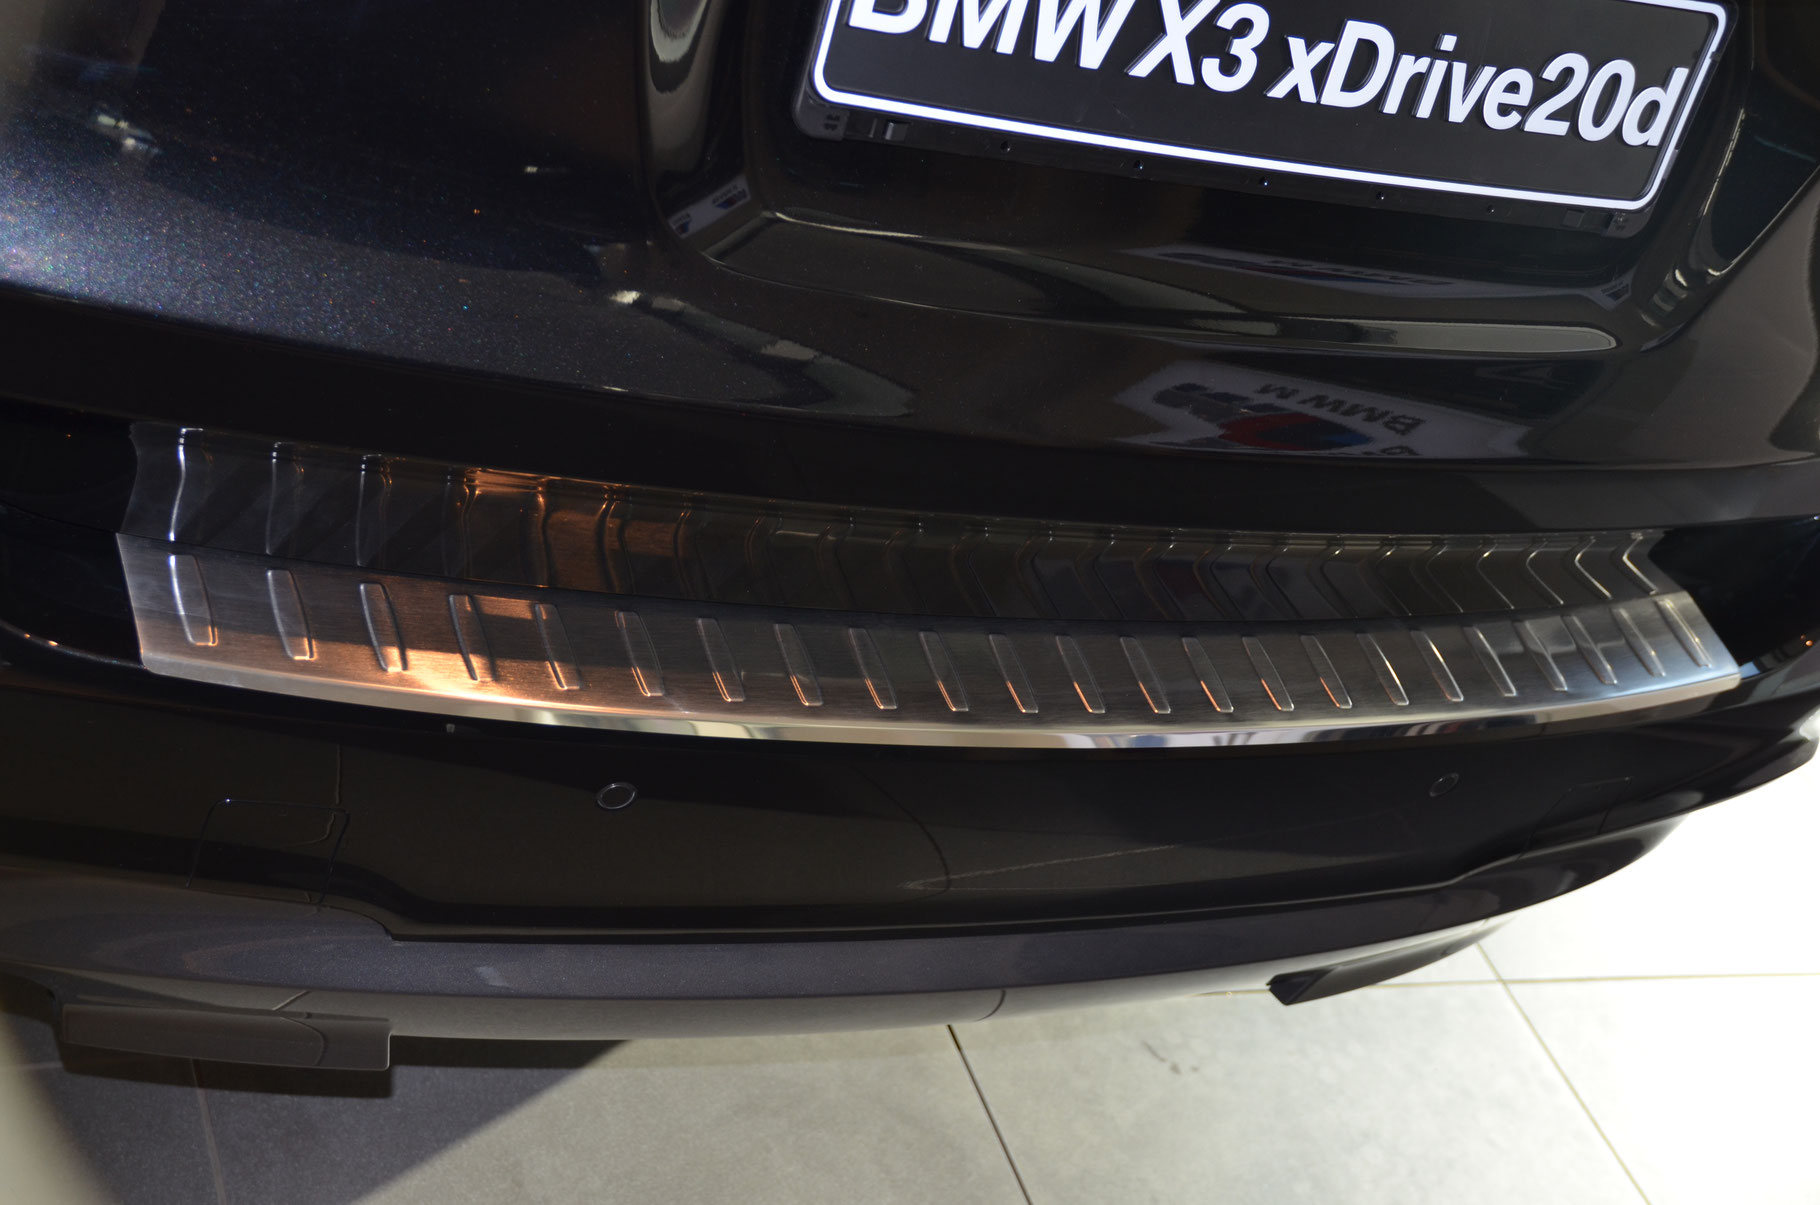 Ladekantenschutz für BMW X3 - Schutz für die Ladekante Ihres Fahrzeuges